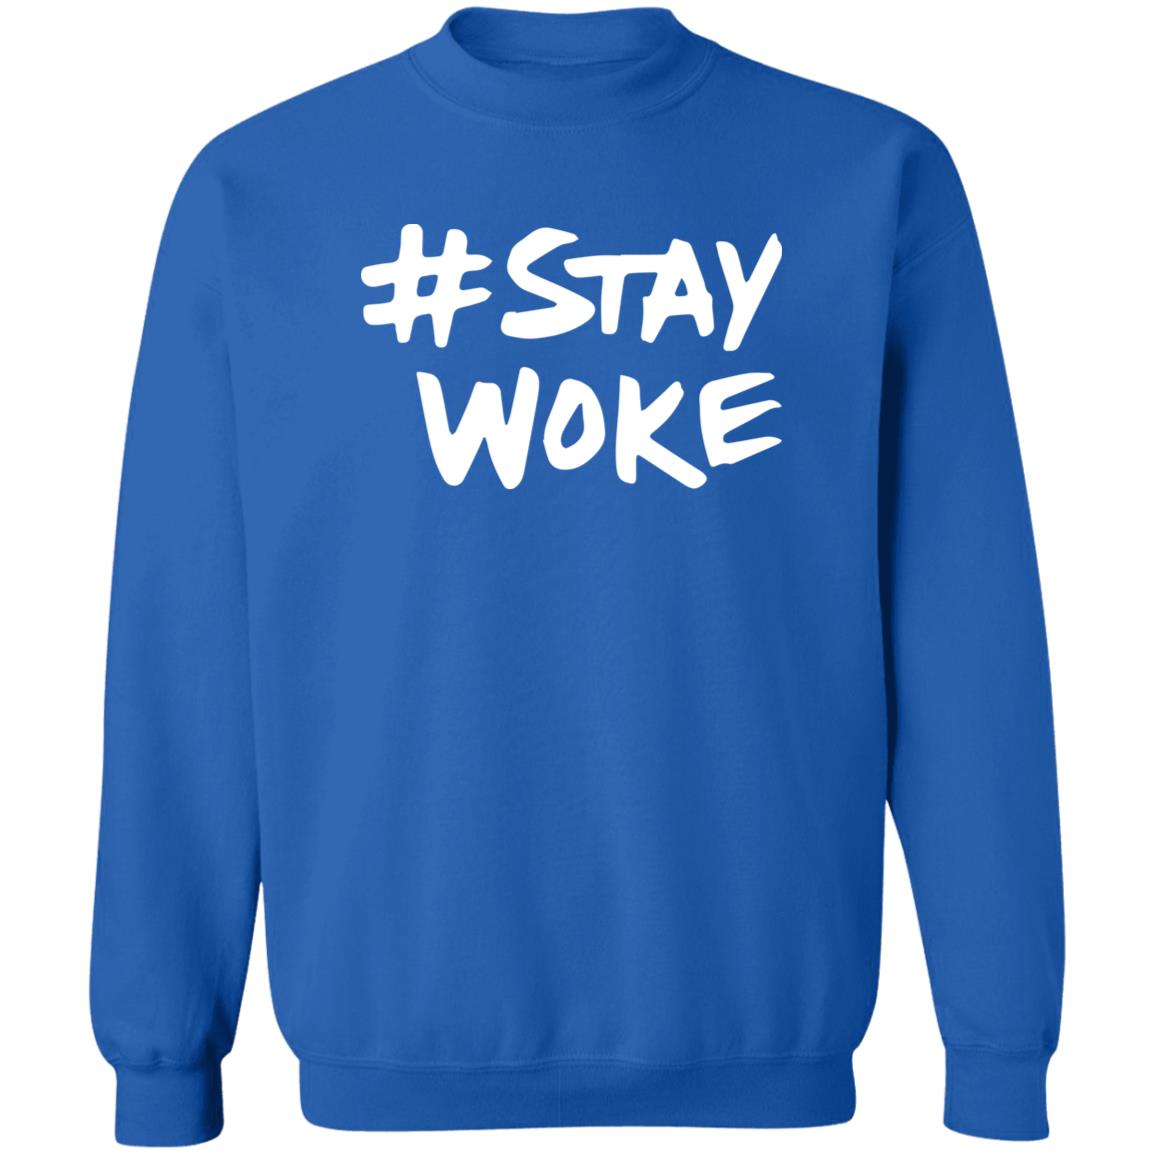 Stay Woke Shirt 2